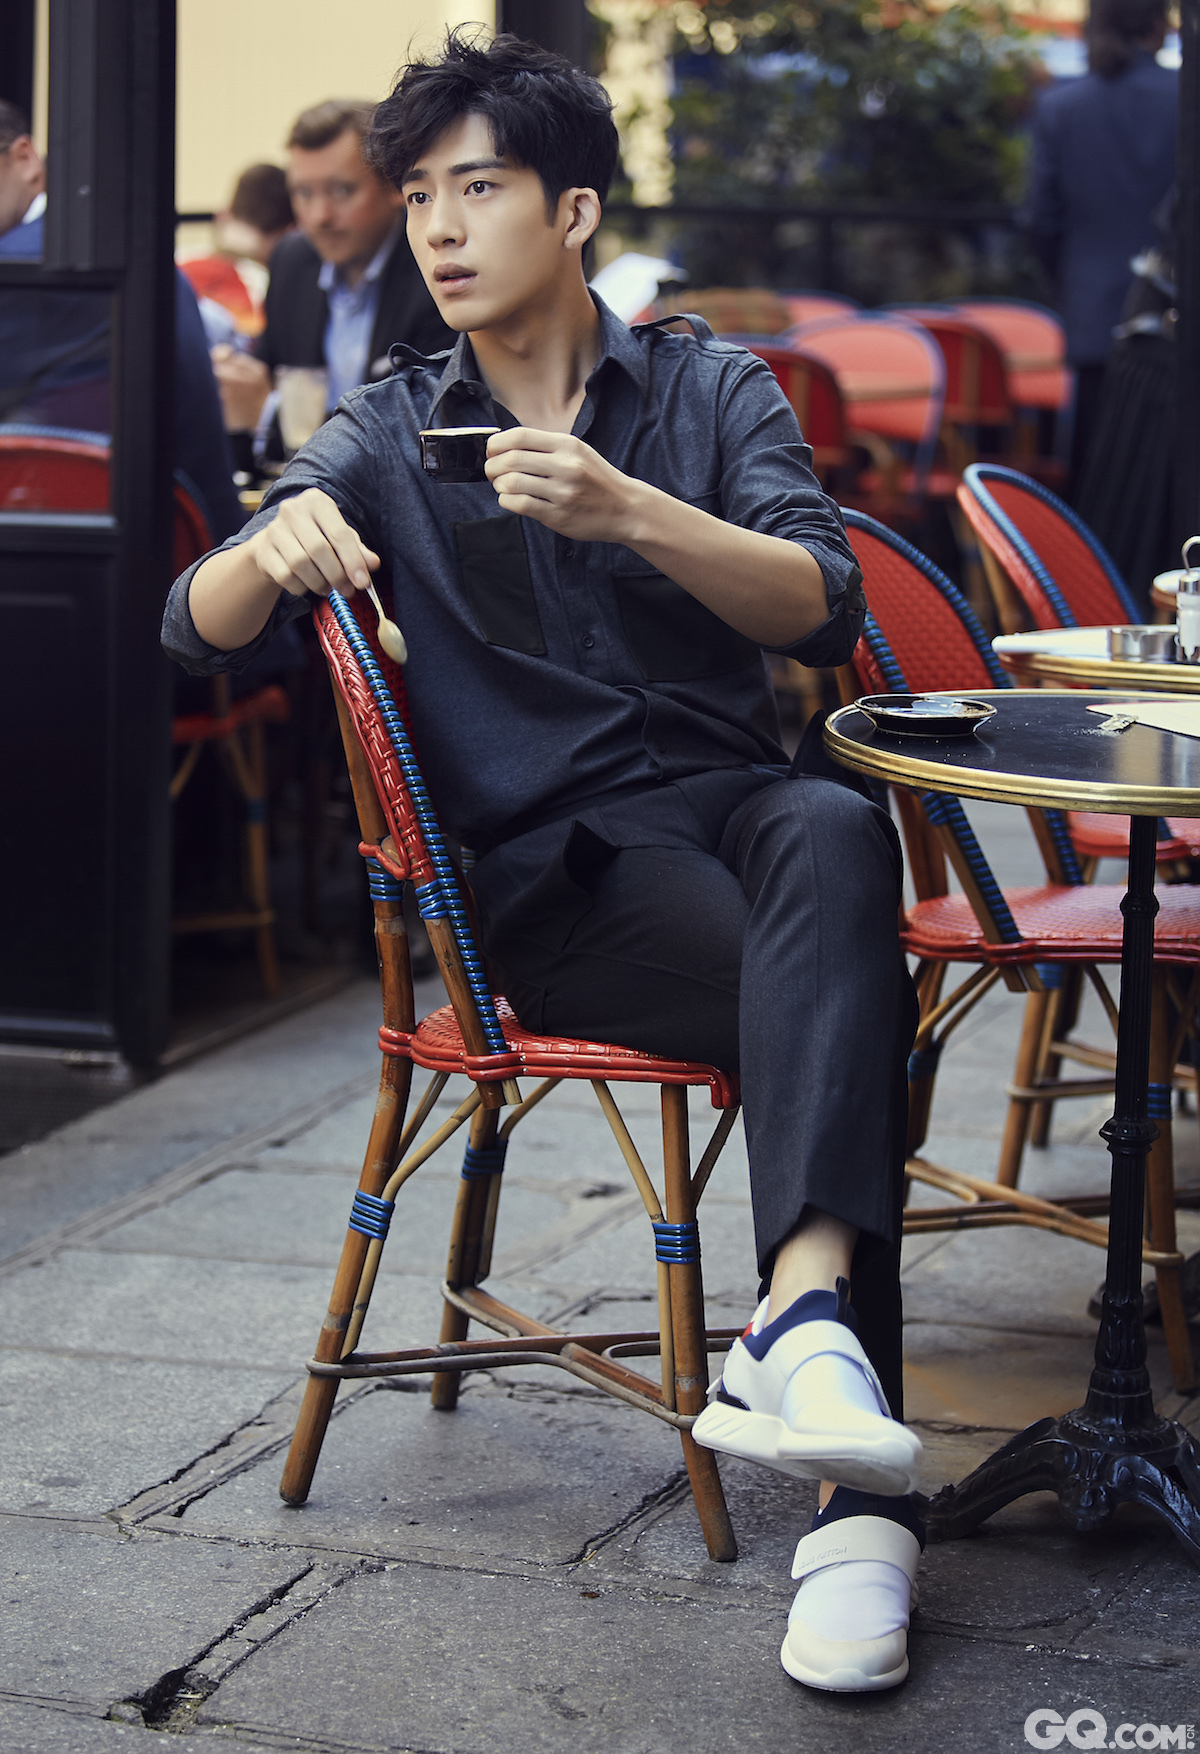 井柏然一身休闲装扮穿行在巴黎的大街小巷之中，或是在巴黎街边感受这座城市的鲜活，或是在街边的书店里寻找城市的历史，或是惬意地坐在路边品尝一杯咖啡，随性慵懒中带你领略旅行的意义。